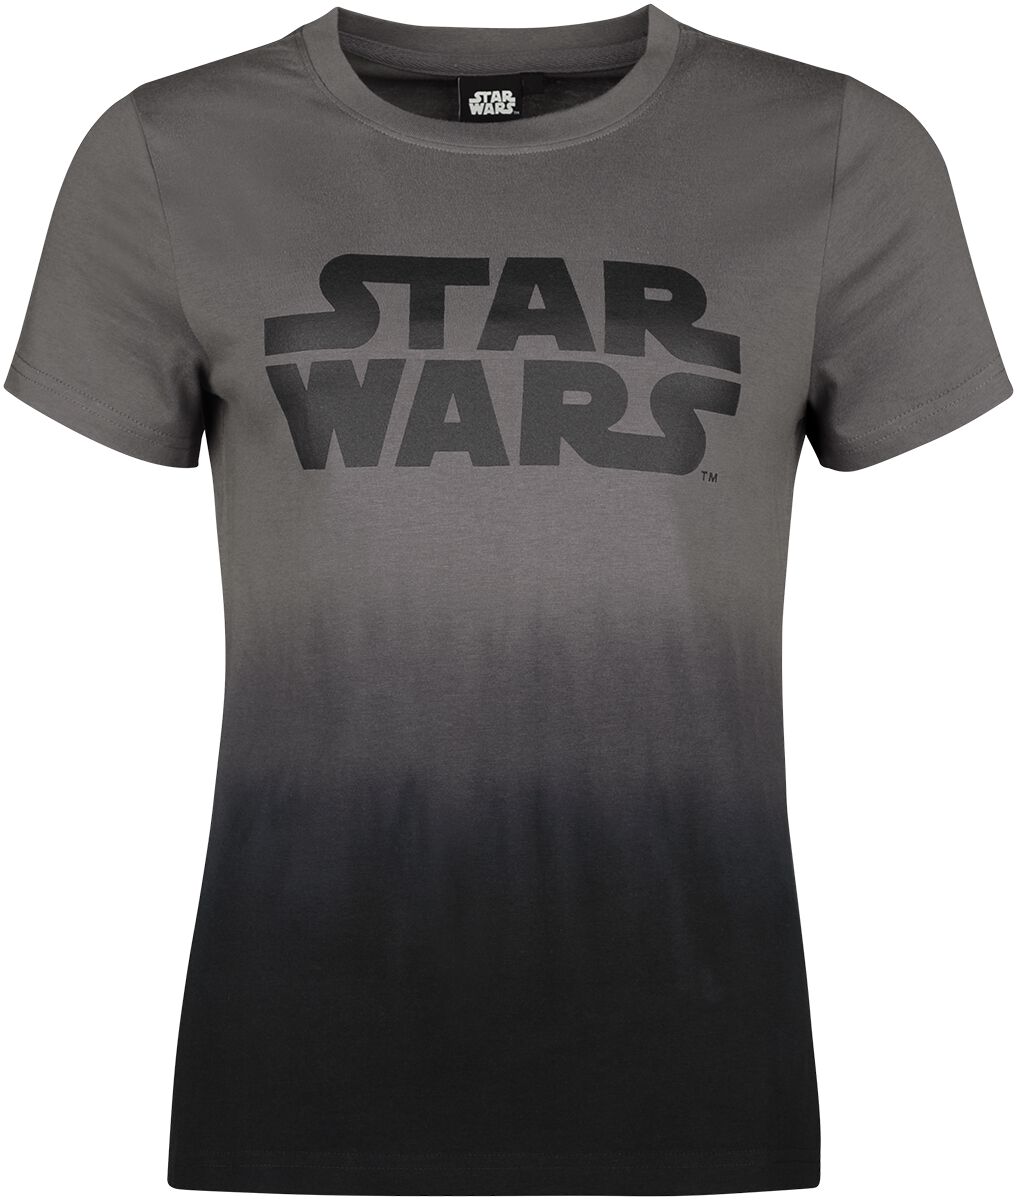 Star Wars - Star Wars - T-Shirt - multicolor